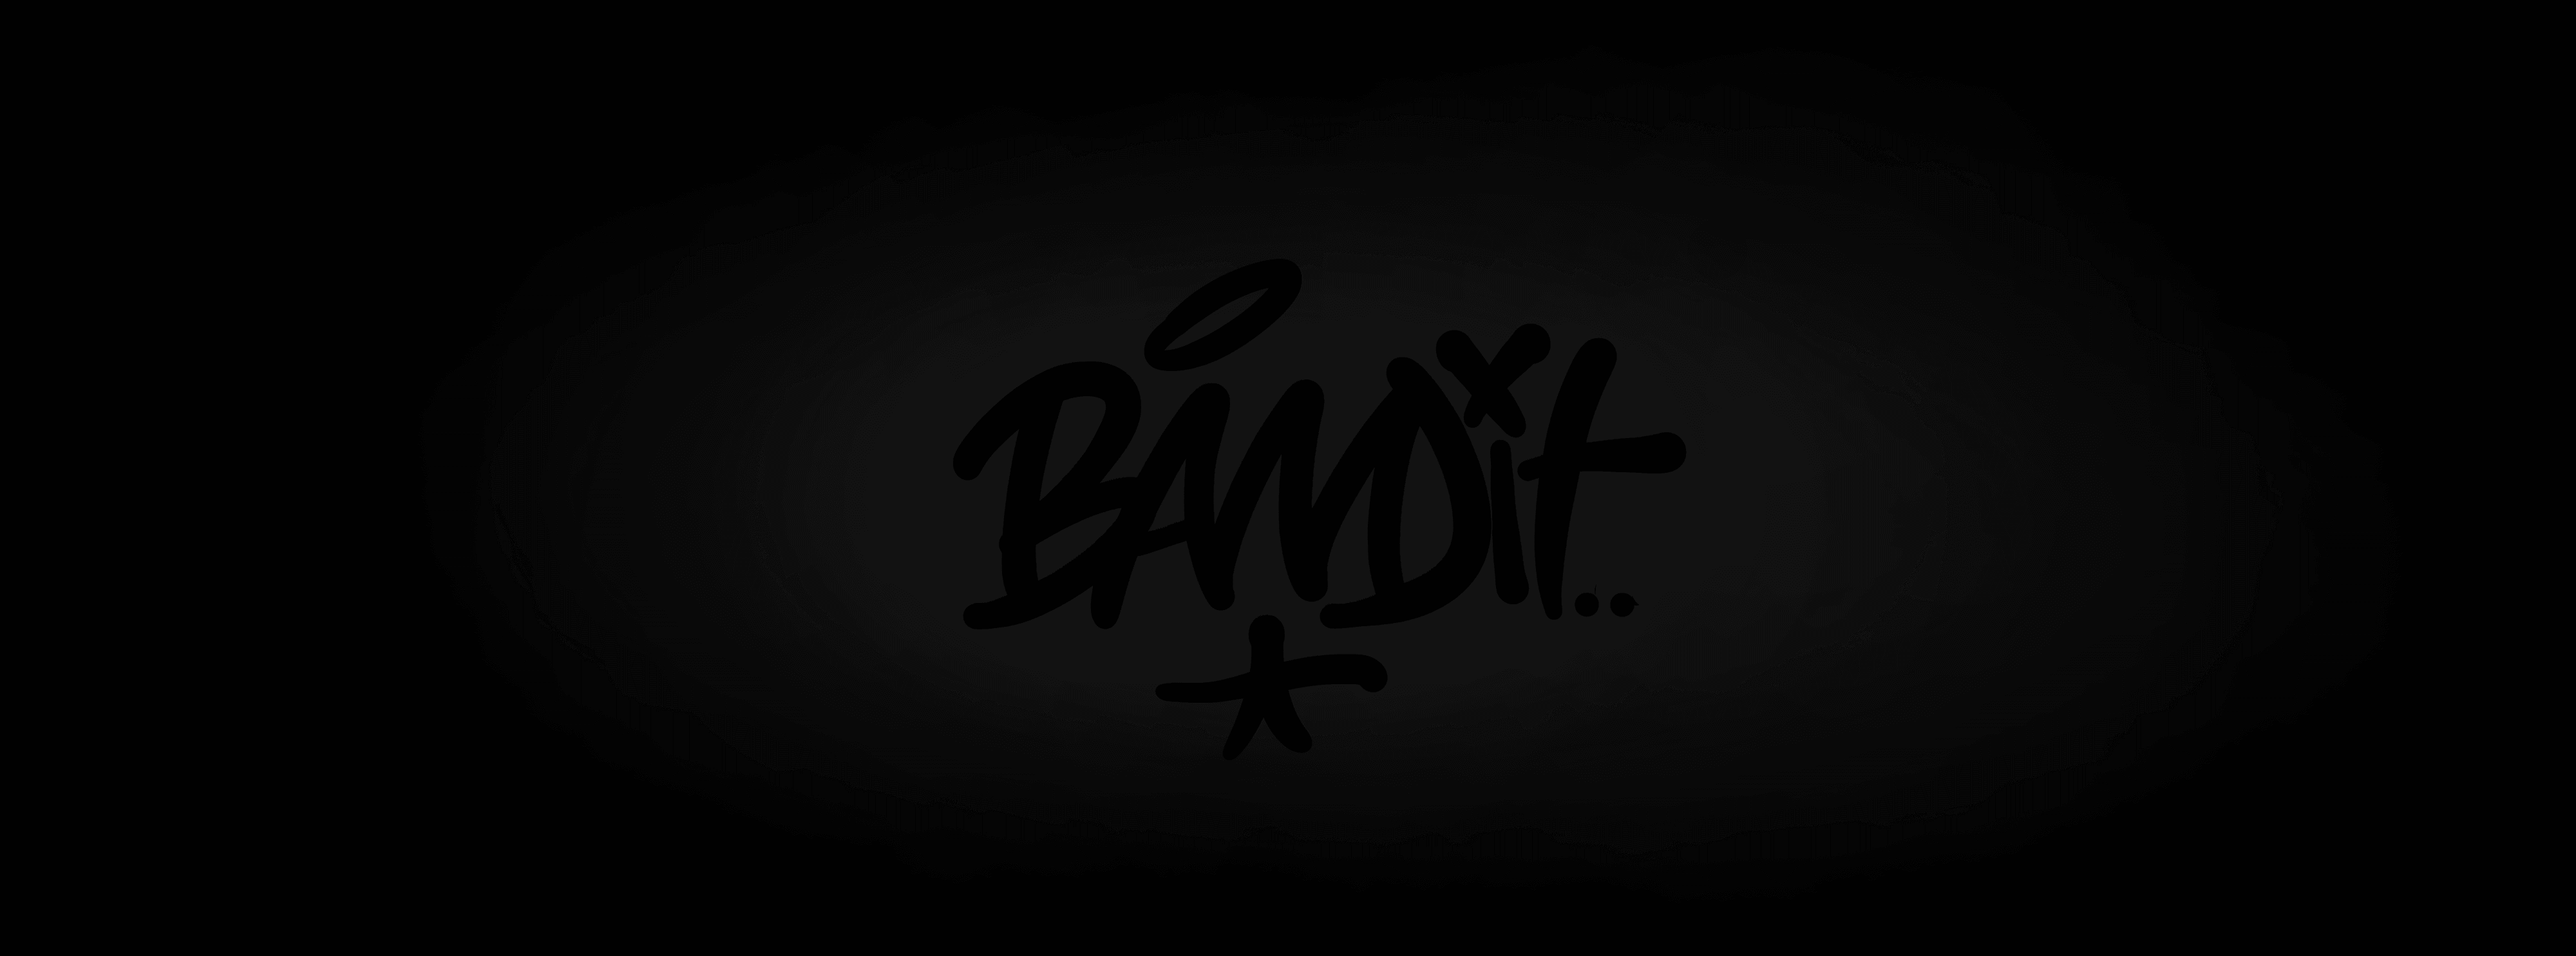 BANDIT-ONE 배너